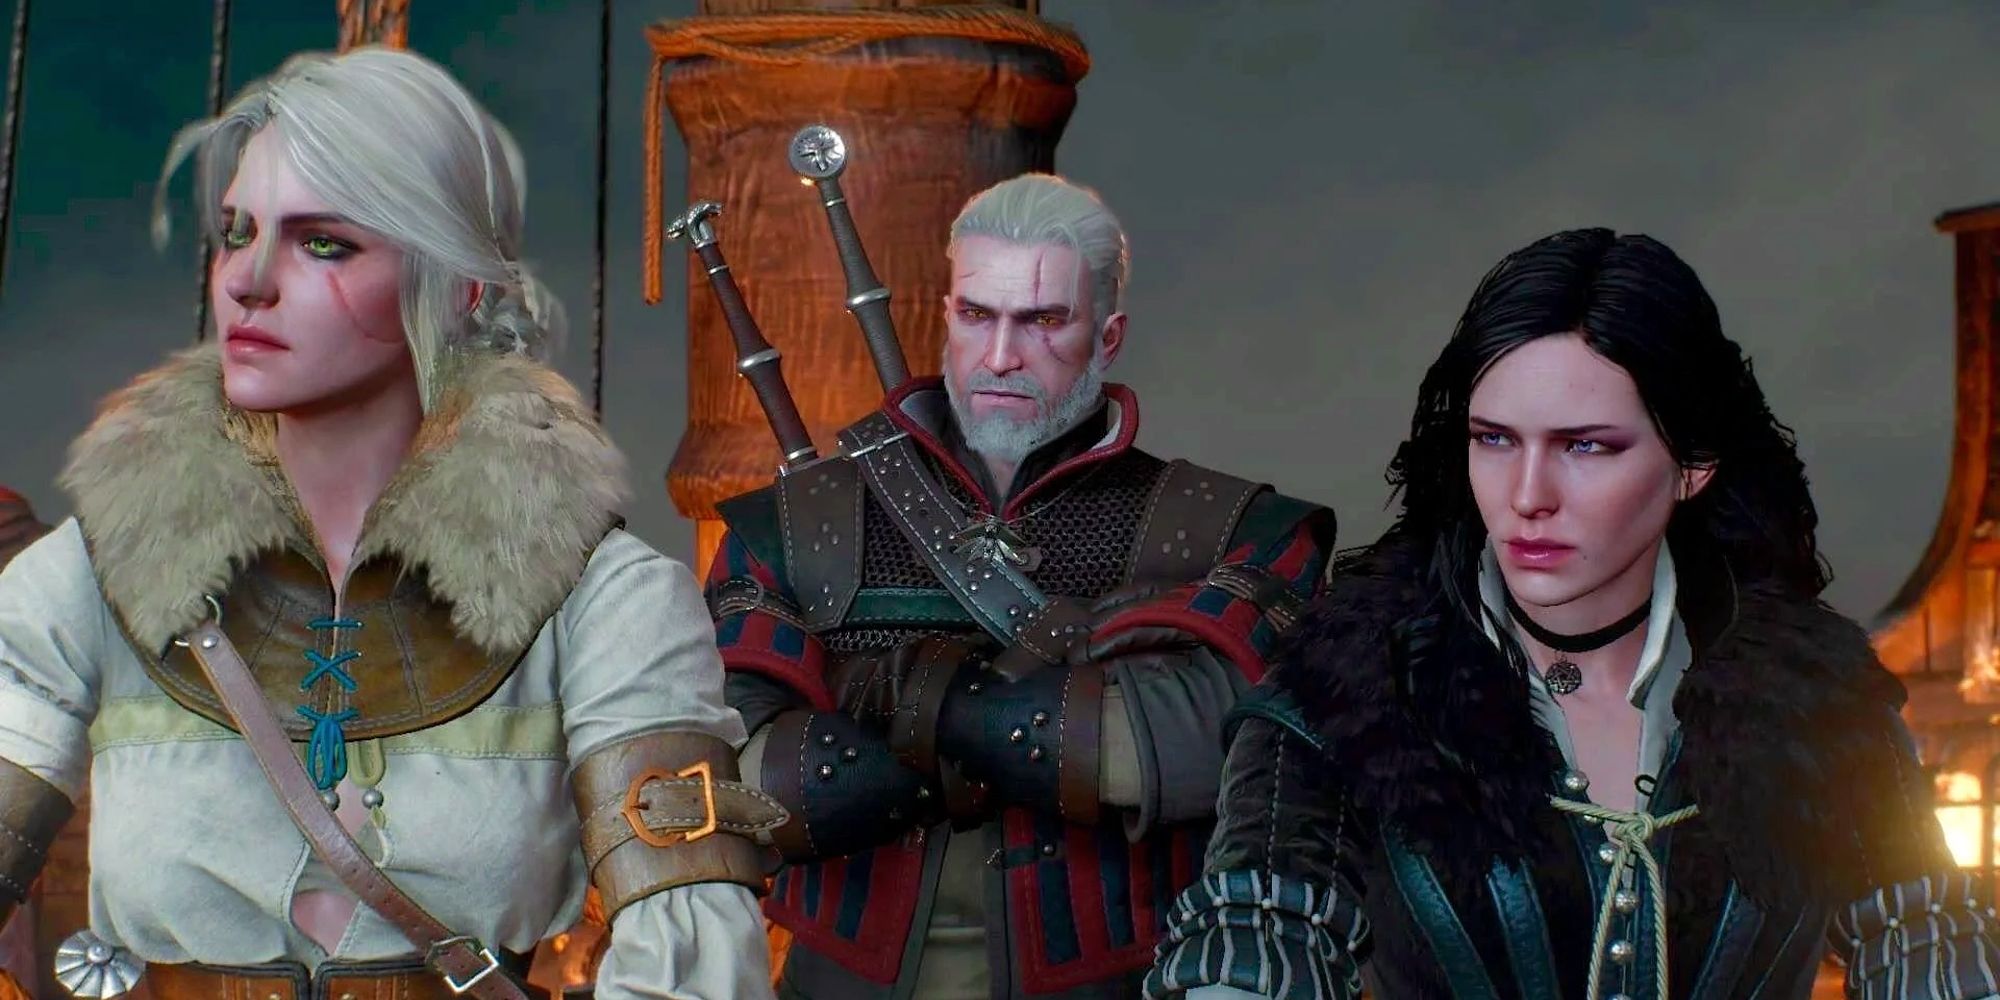 Imagem de Ciri, Yennefer e Geralt a bordo de um navio olhando em direção ao seu destino.